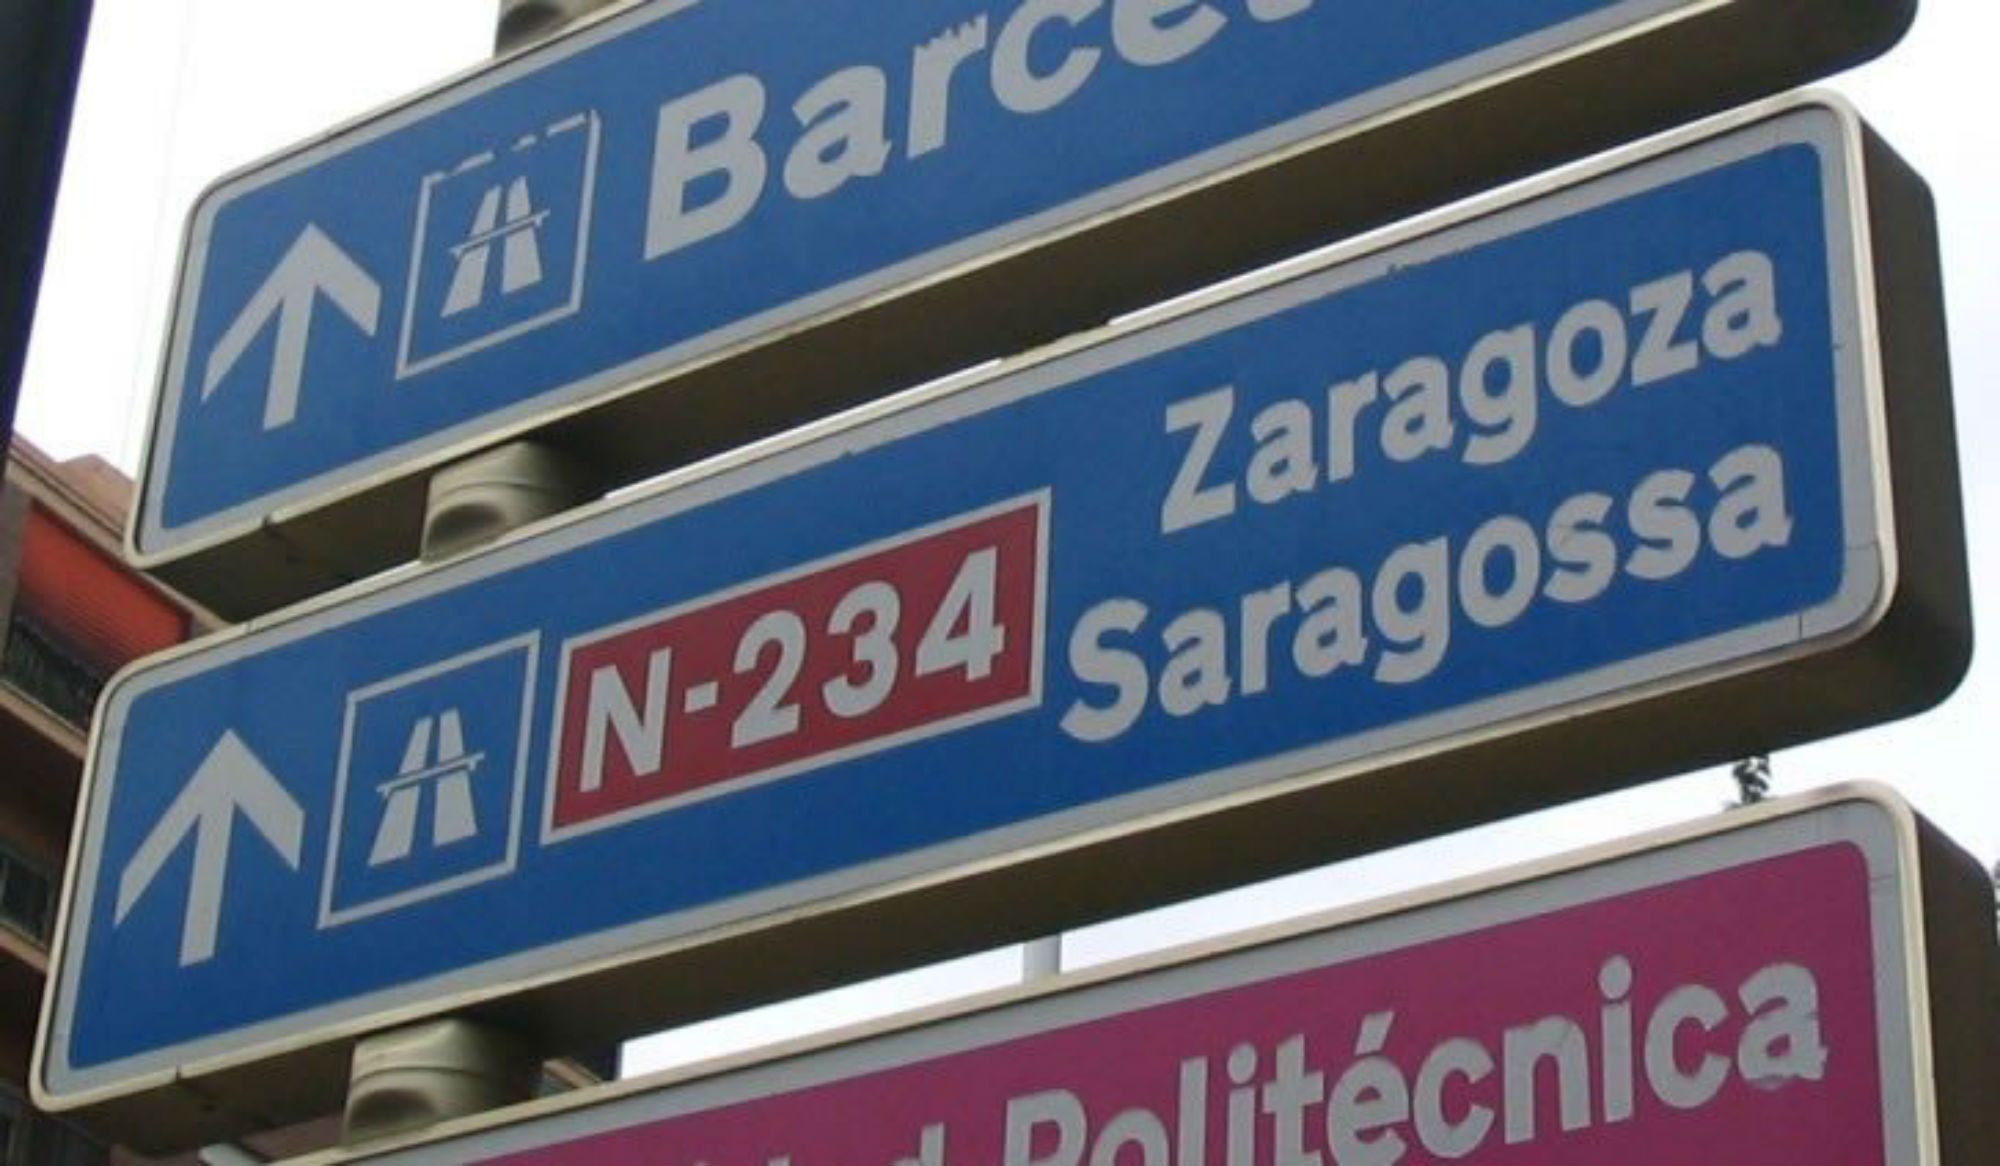 L'oficialitat única del català no afectaria el bilingüisme, segons un estudi